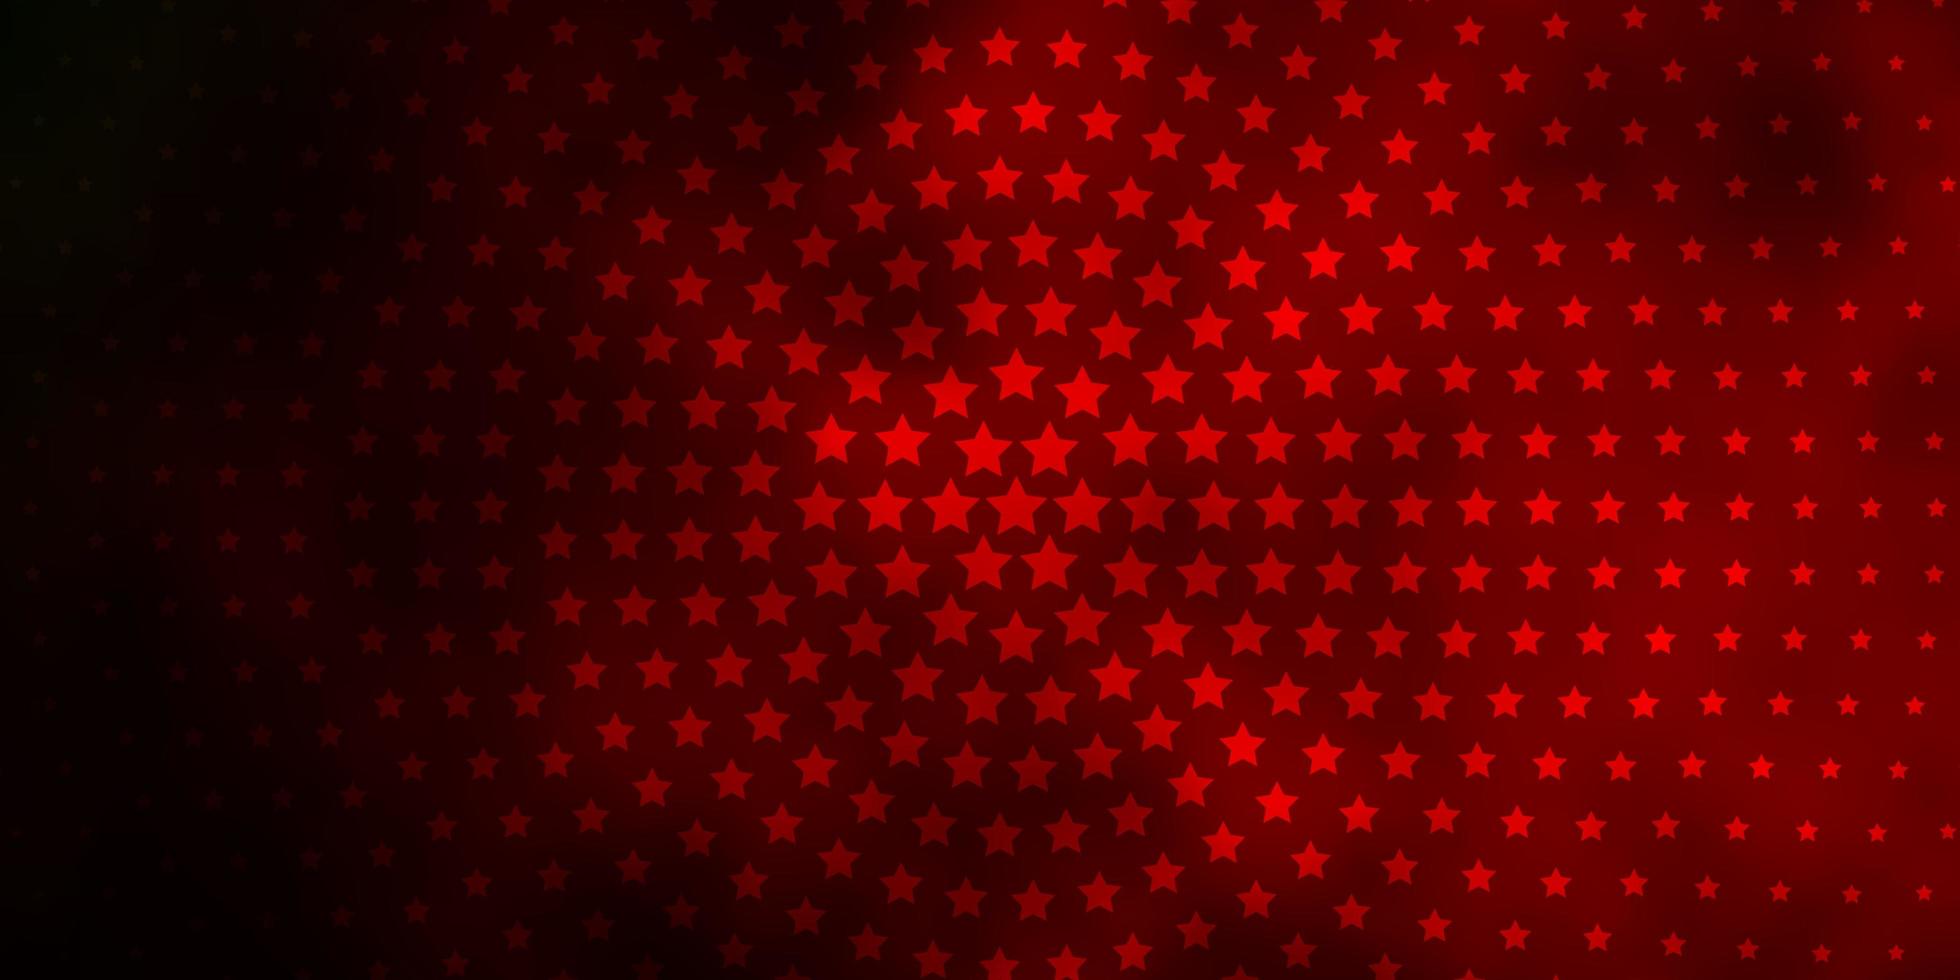 sfondo rosso scuro con stelle colorate. vettore